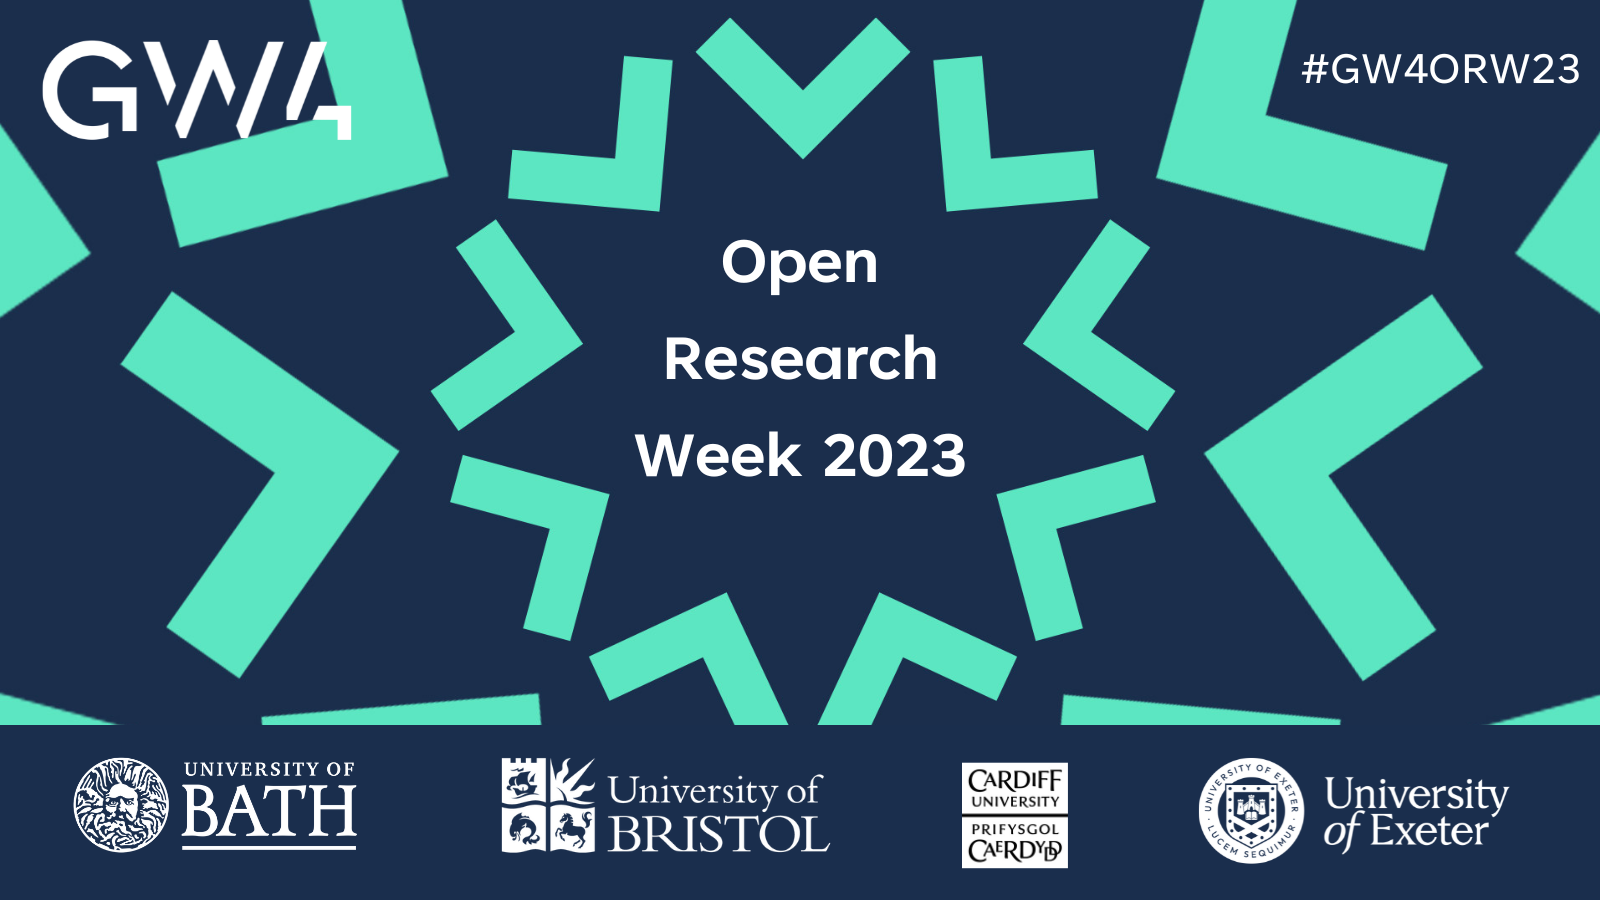 GW4 Open Research Week 2023